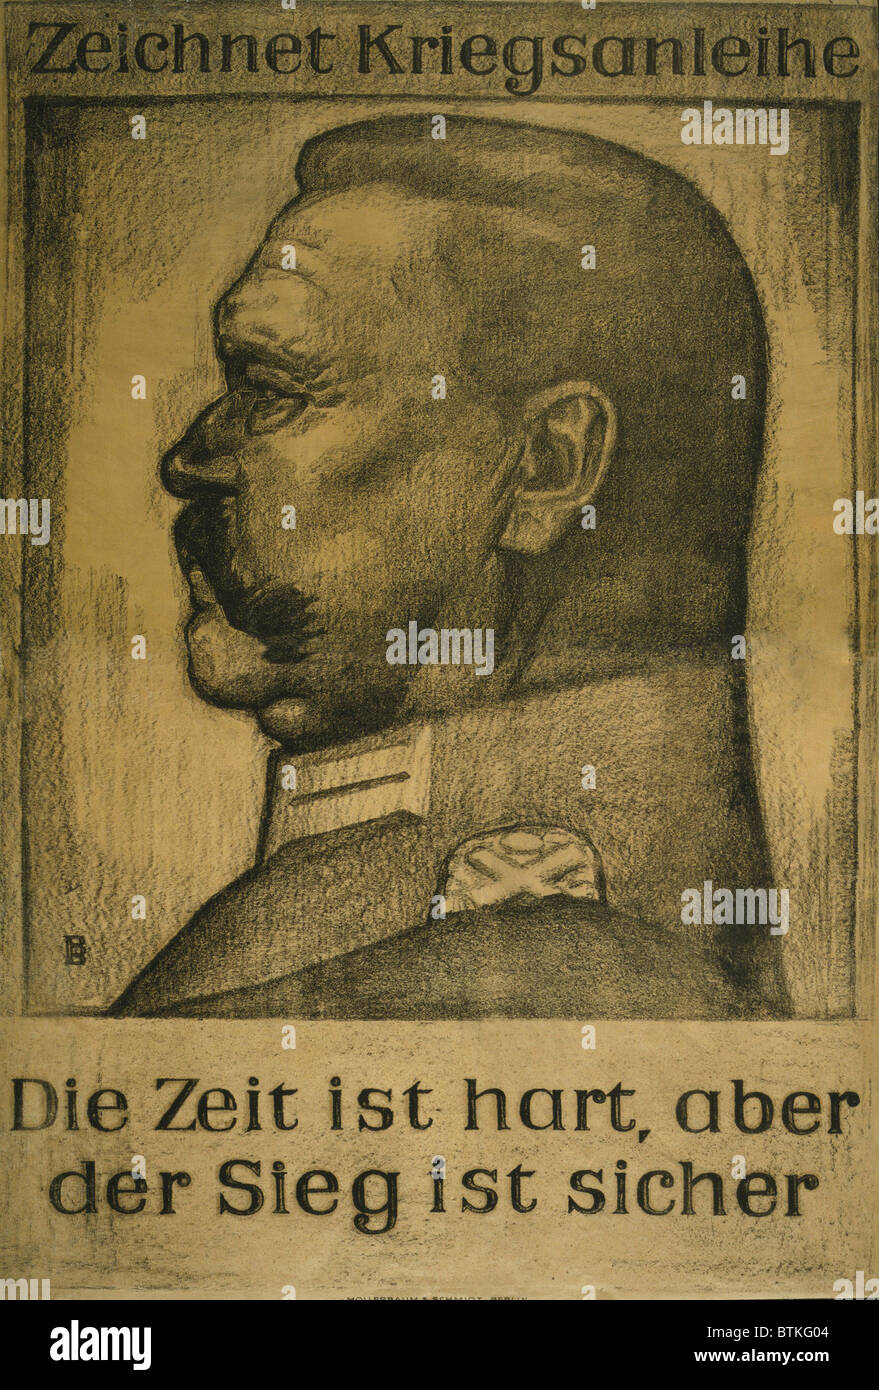 German World War I Plakat mit einem Porträt-Profil von Feldmarschall Paul von Hindenburg. Der Text lautet: abonnieren Sie die Kriegsanleihe. Die Zeiten sind schwierig, aber Sieg ist sicher. 1917. Stockfoto